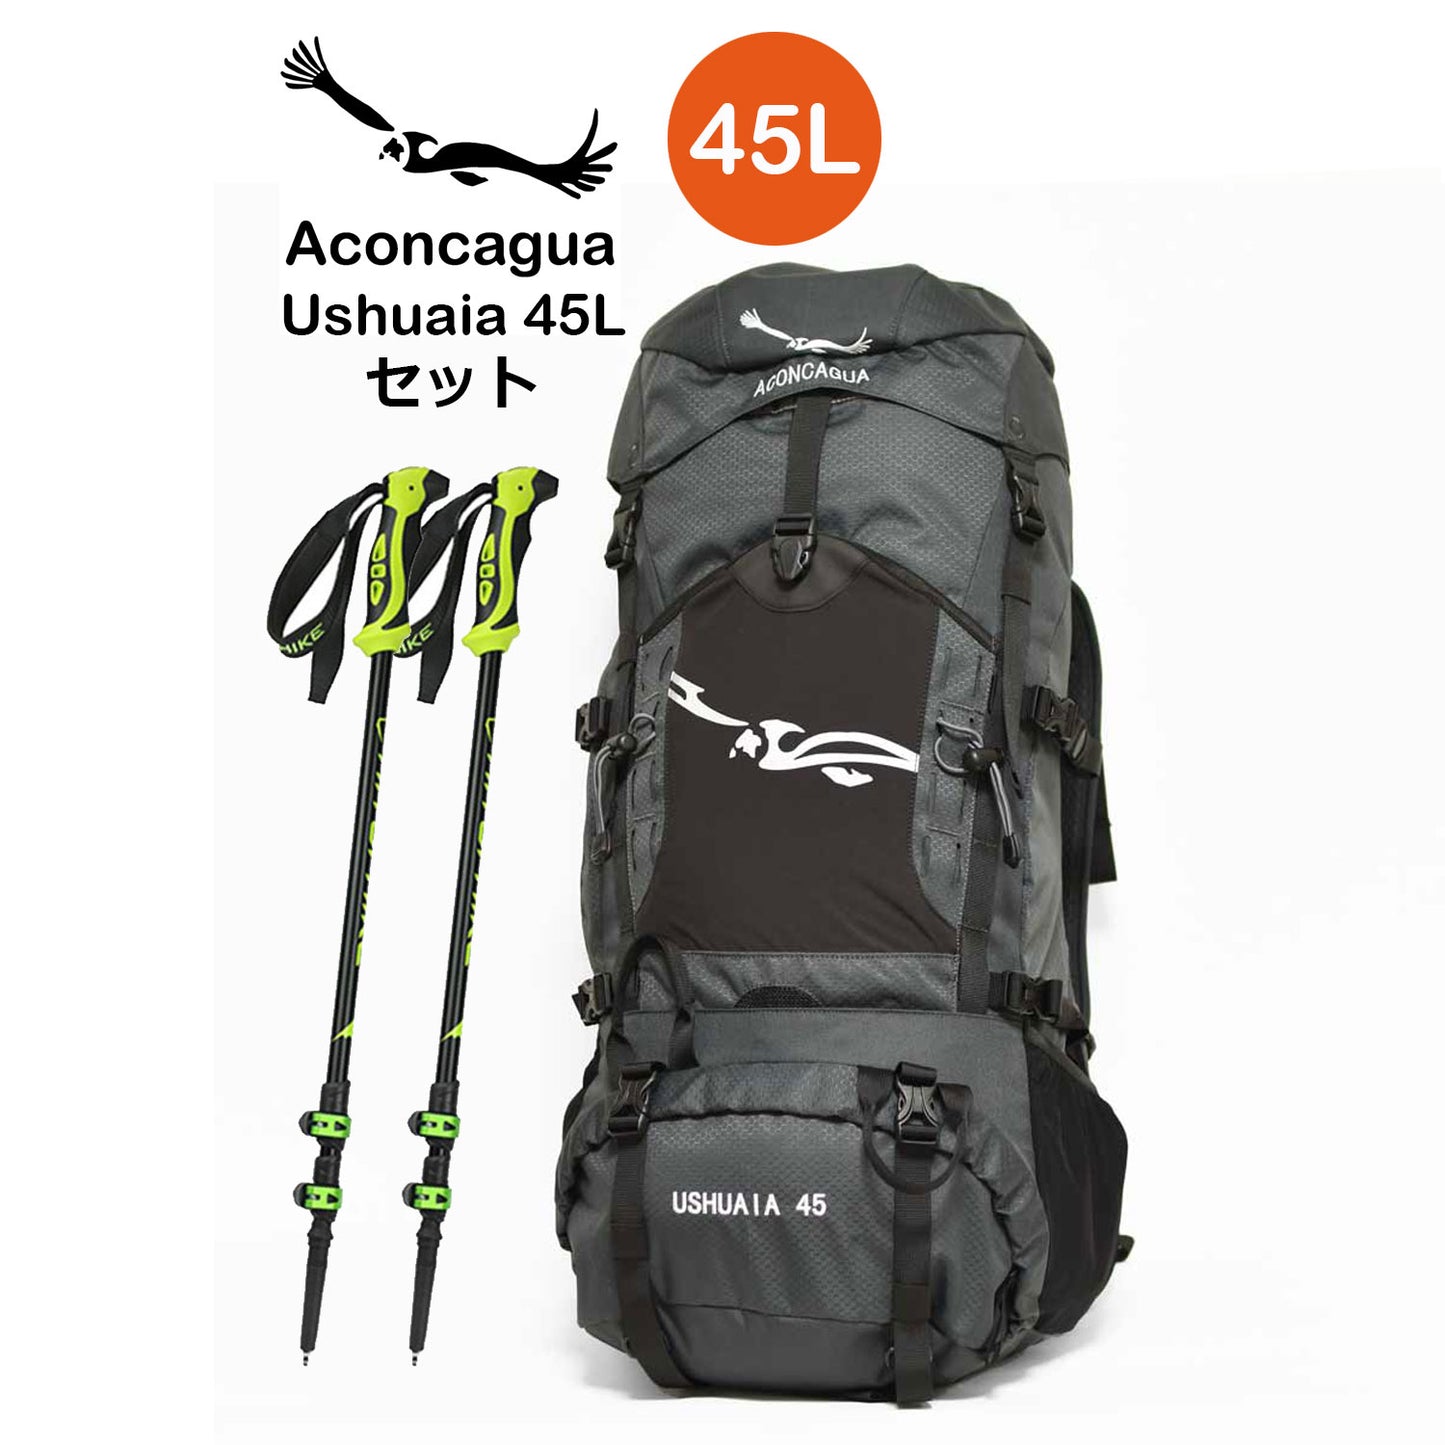 【セット】 45Lリュックサックとハイキングポールのセット Aconcagua Ushuaia ウスアイア 45 セット